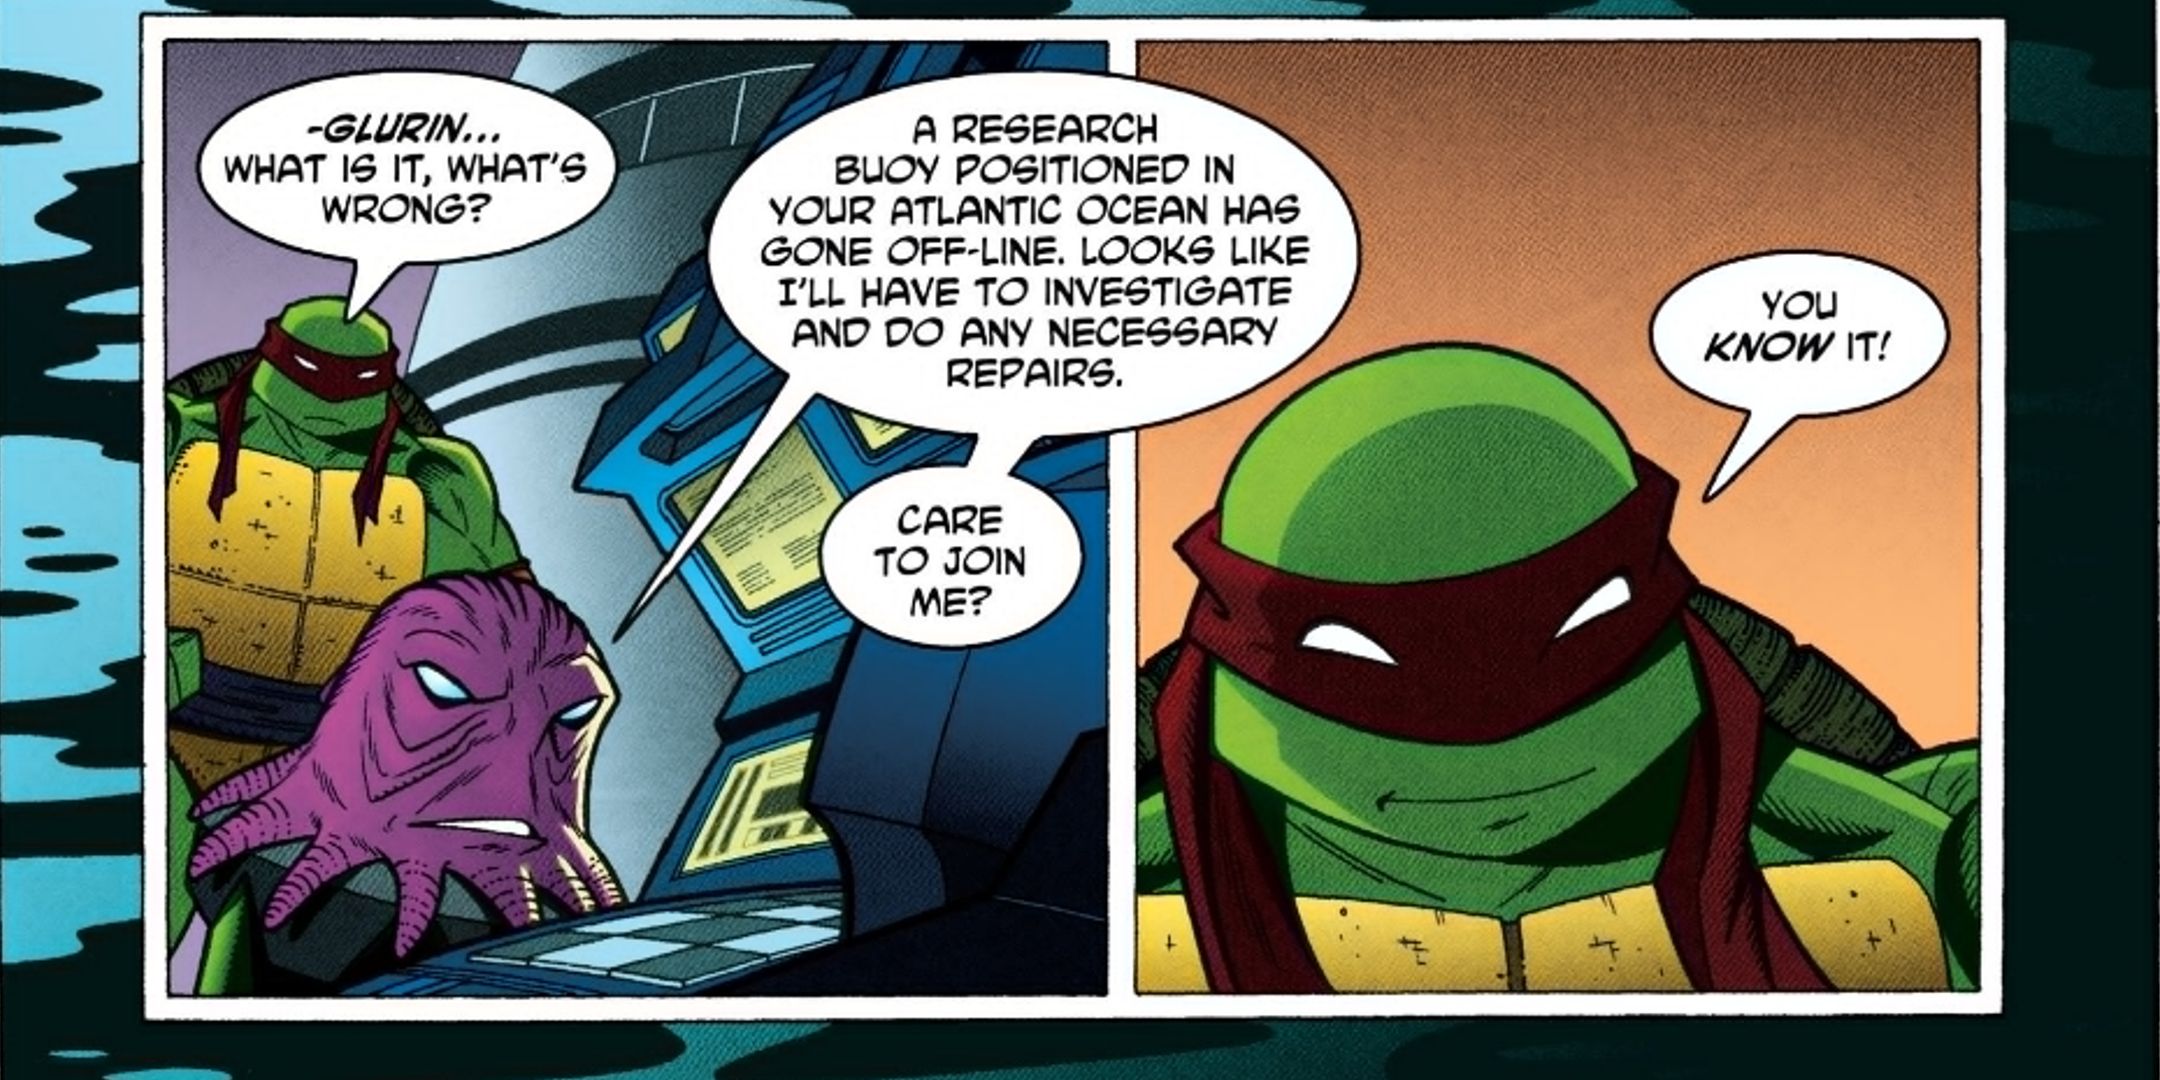 TMNT: Donatello's Greatest Comics, Ranked